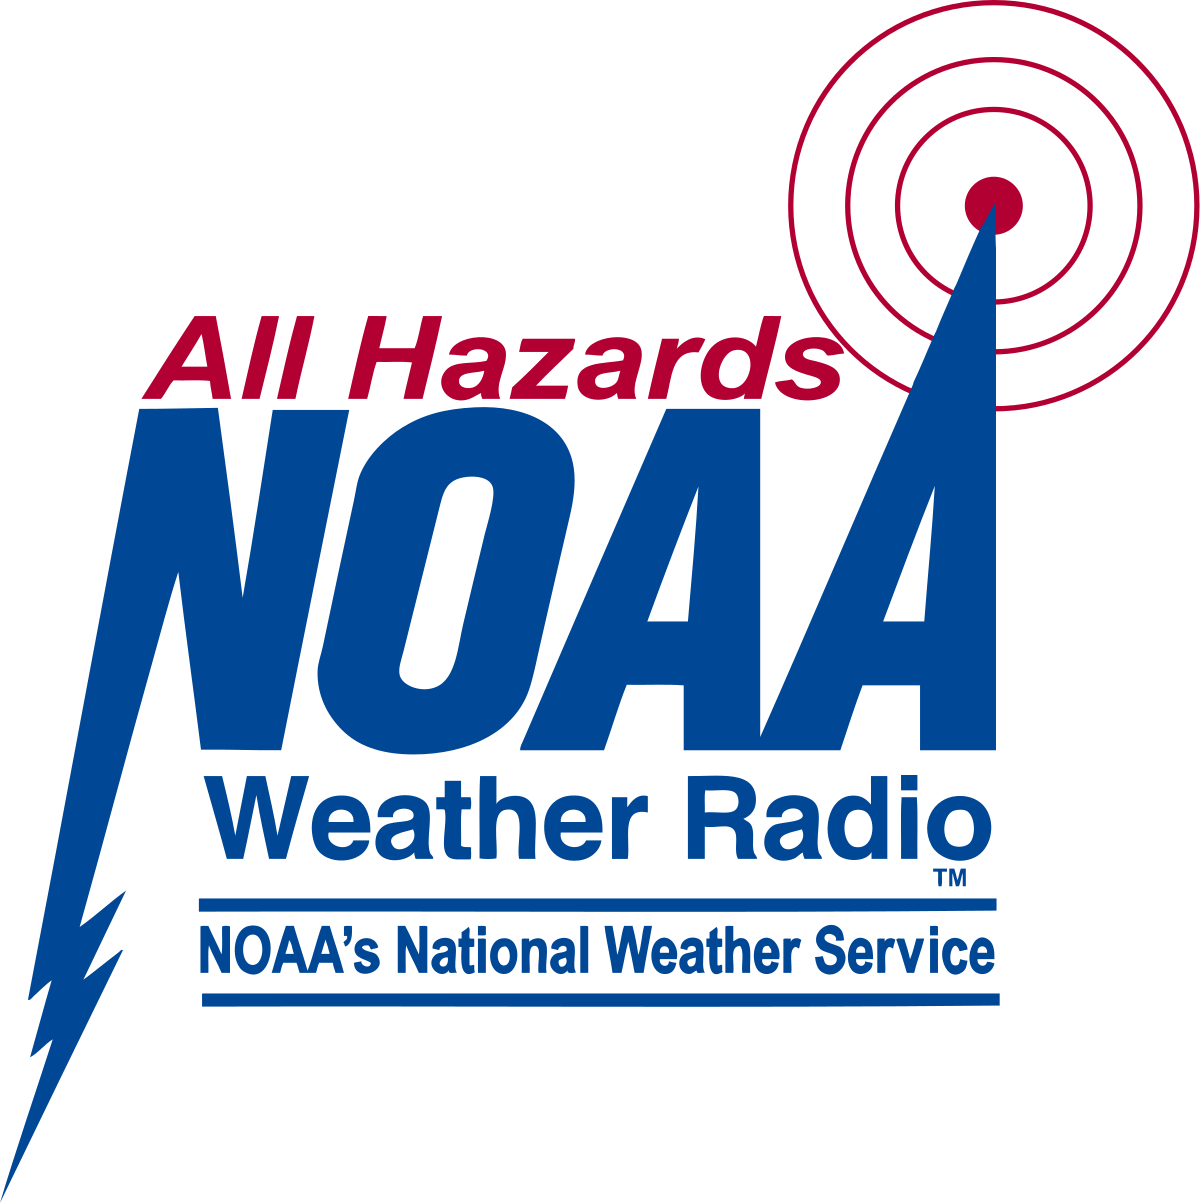 NOAA Weather Radio - Wikipedia